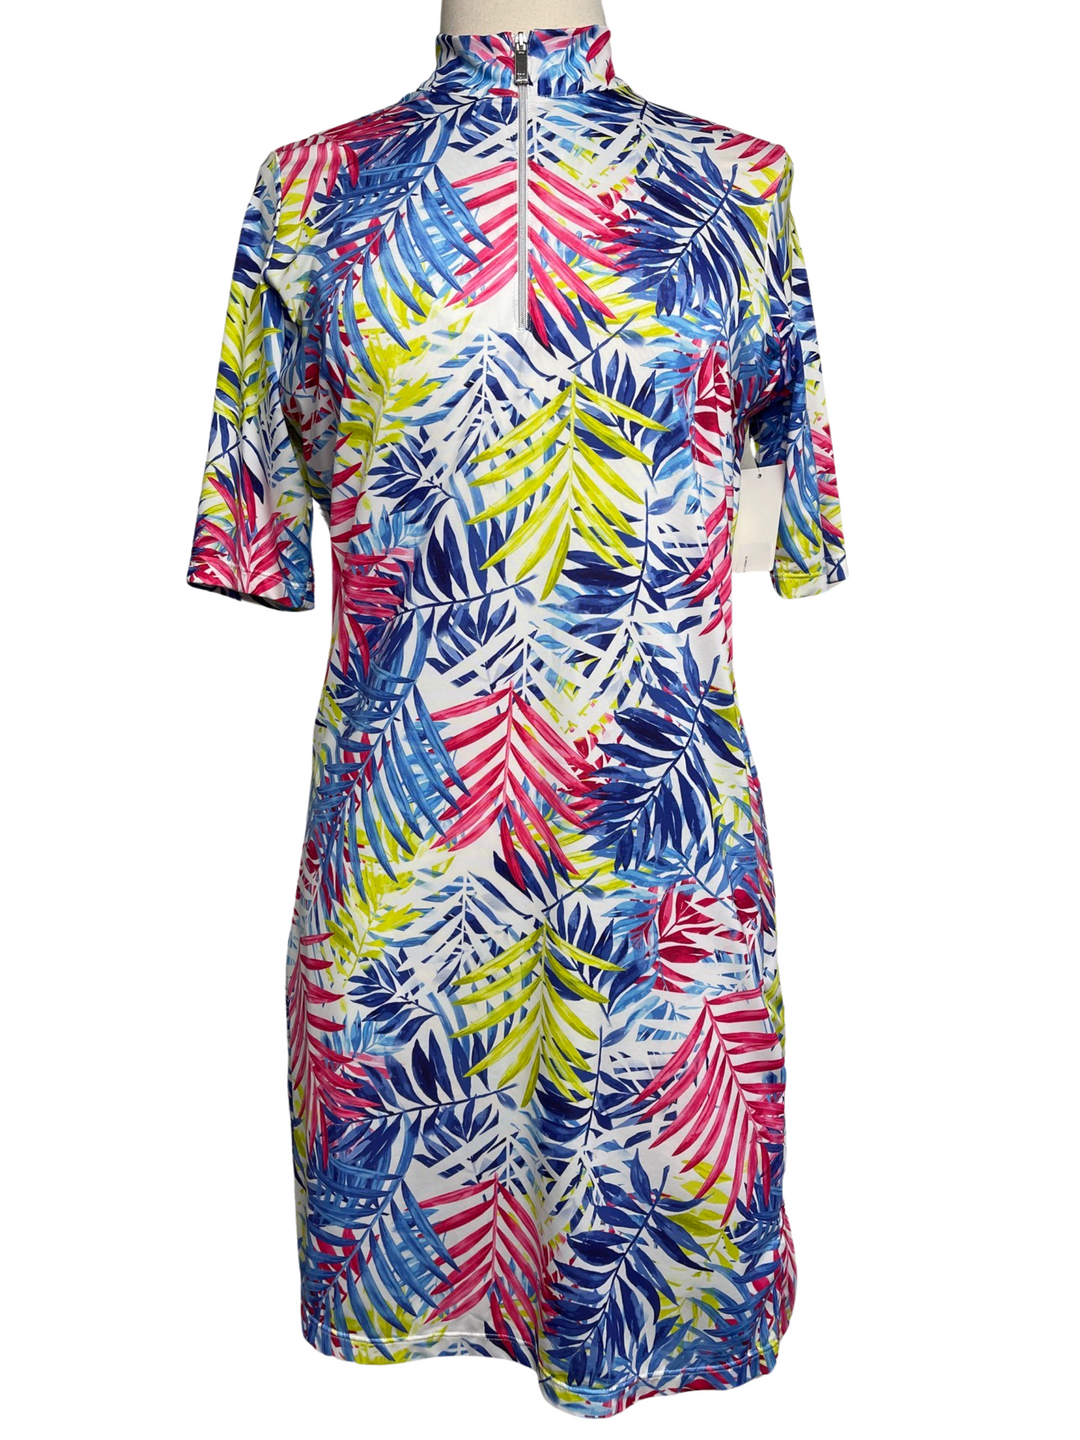 Tail Vibrant Palms 3/4 Sleeve Dress - Multicolor - Medium - Skorzie